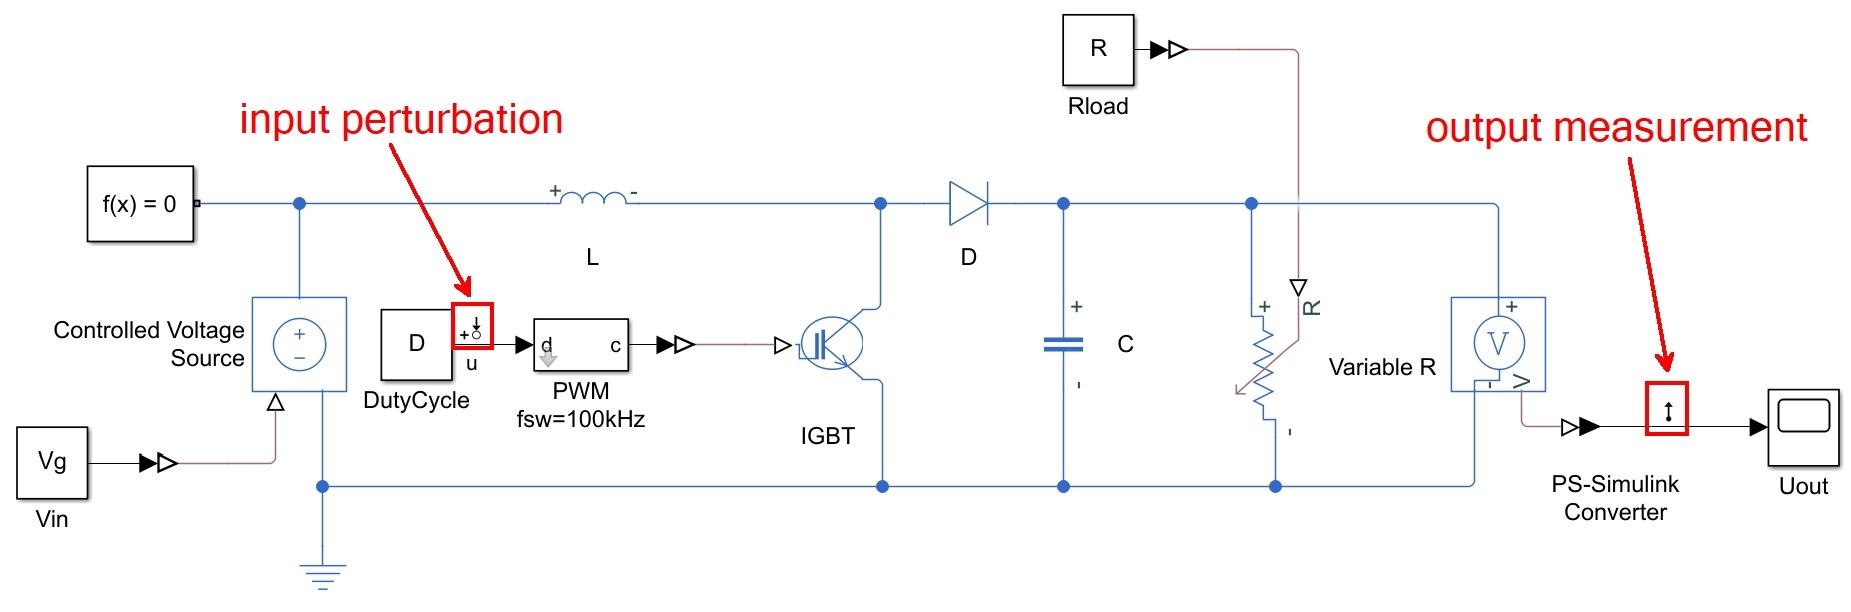 開放迴路升壓轉換器之模型